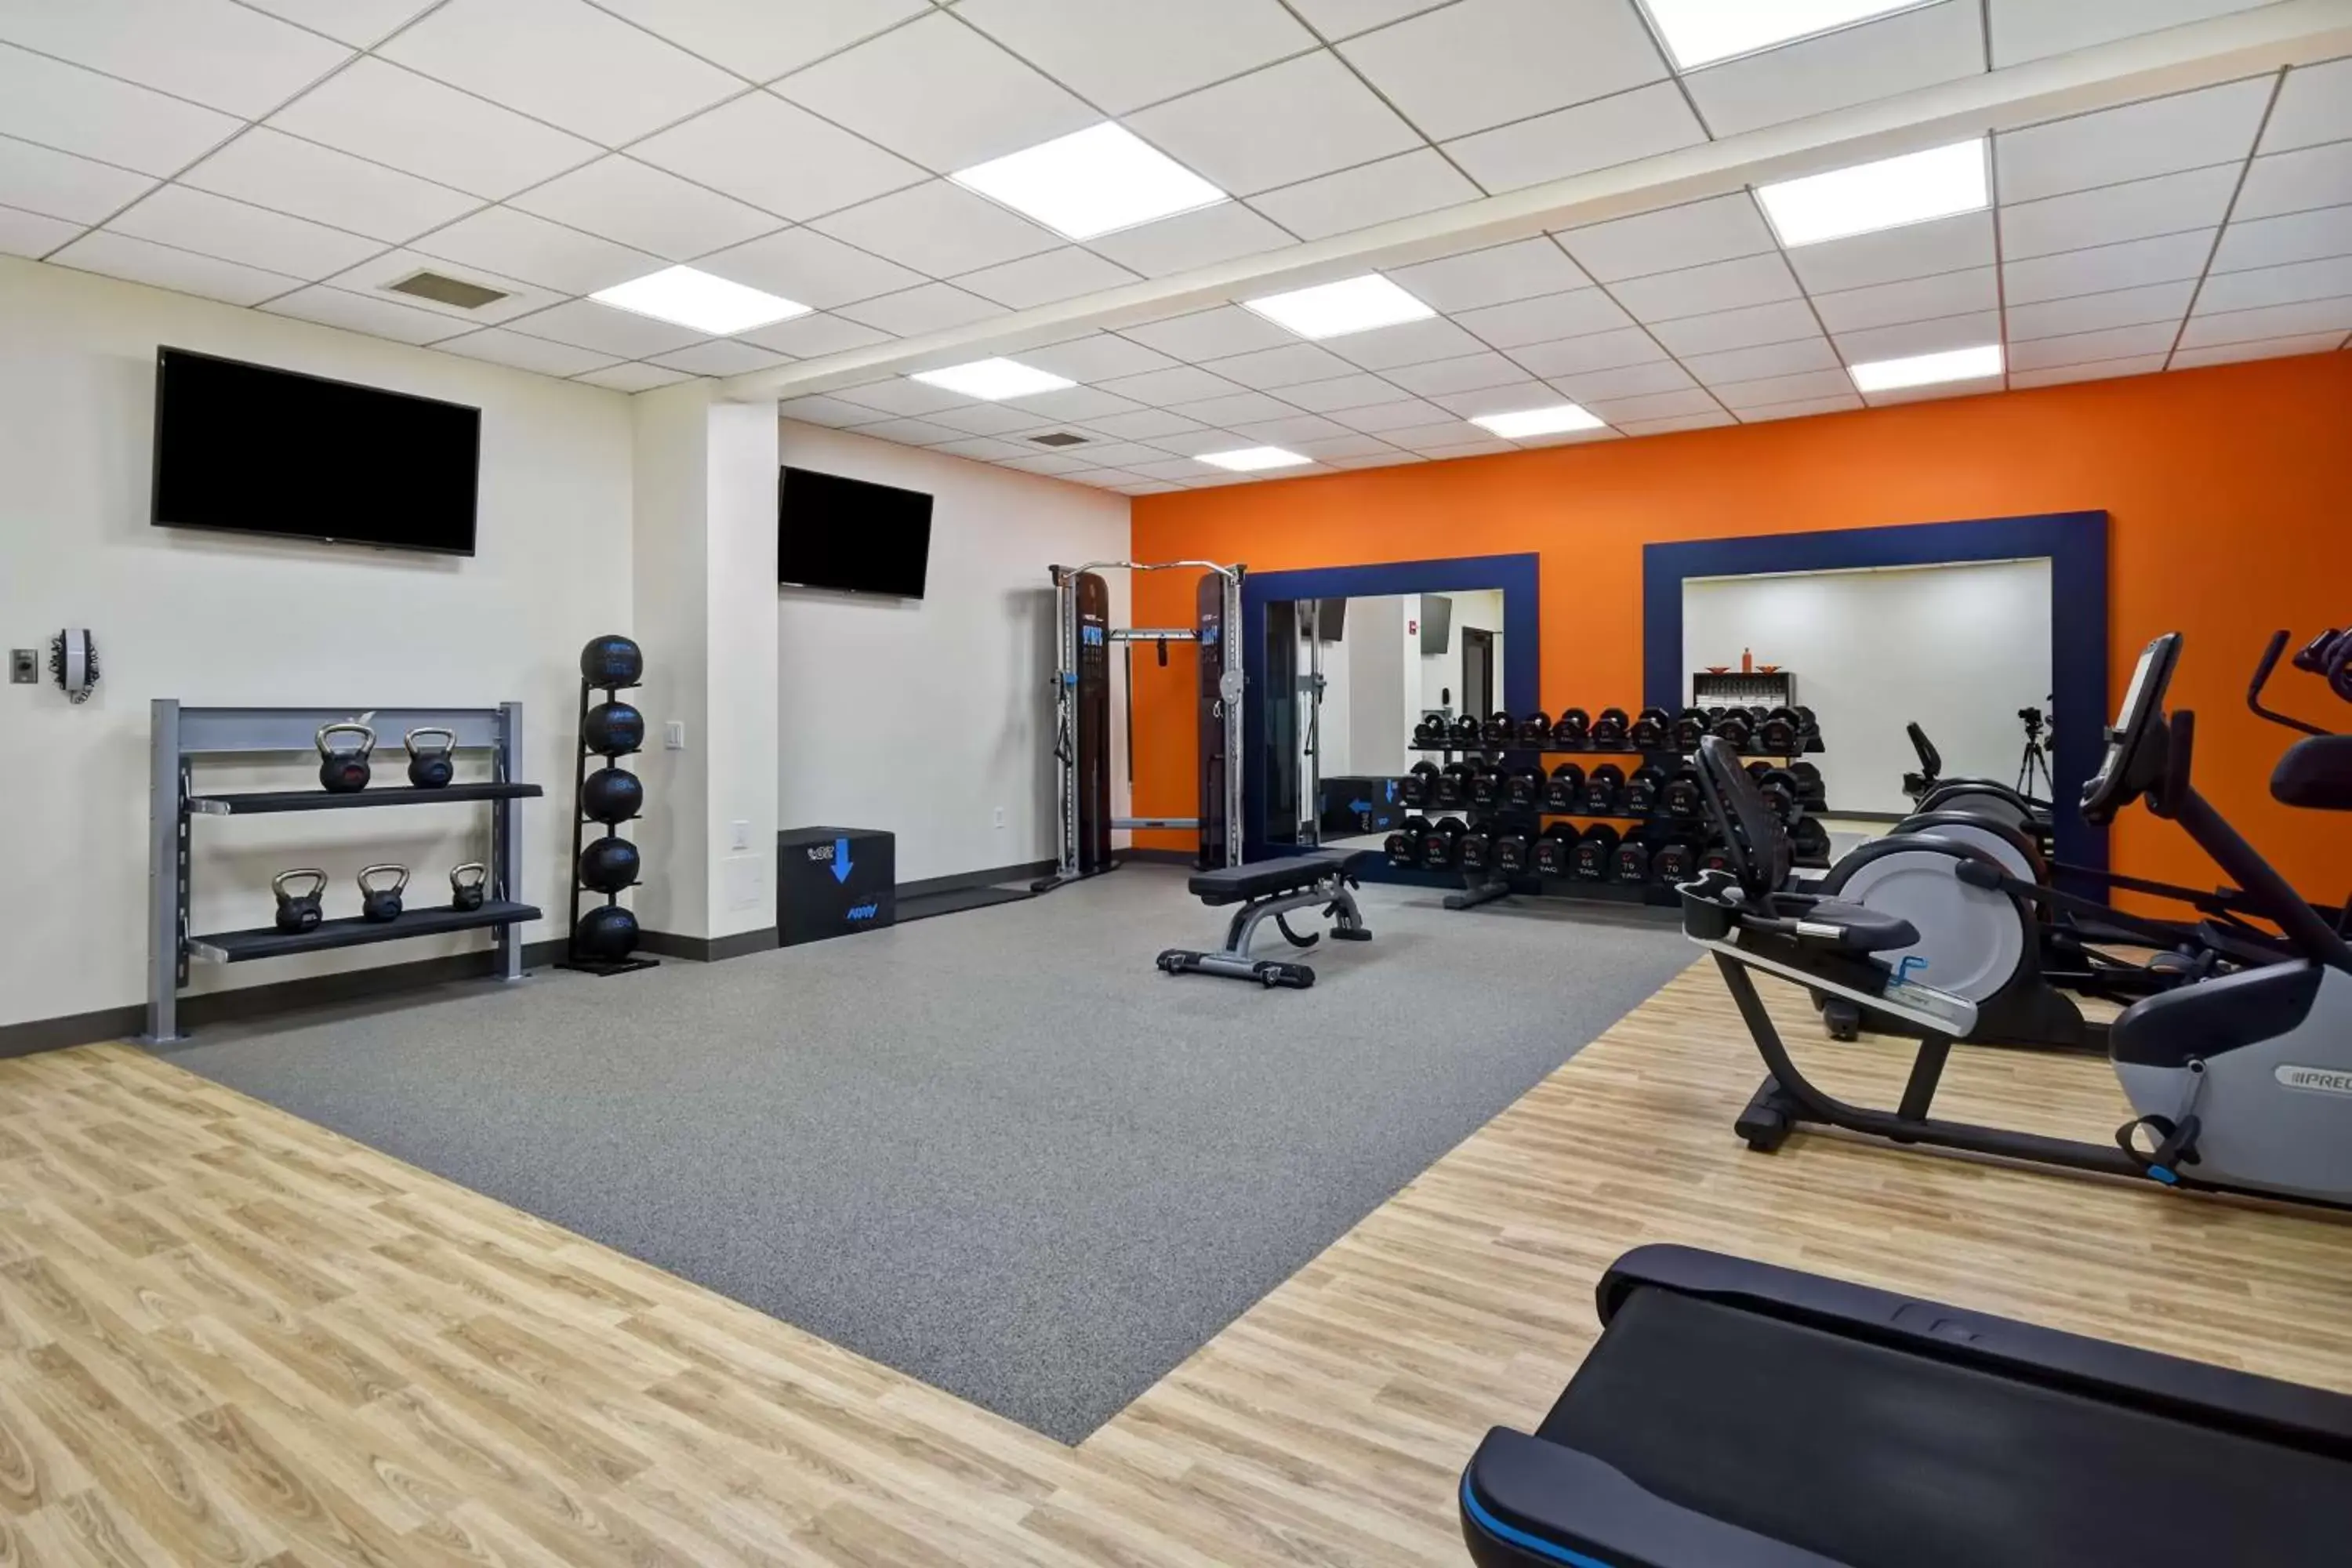 Fitness centre/facilities, Fitness Center/Facilities in Hampton Inn NY-JFK